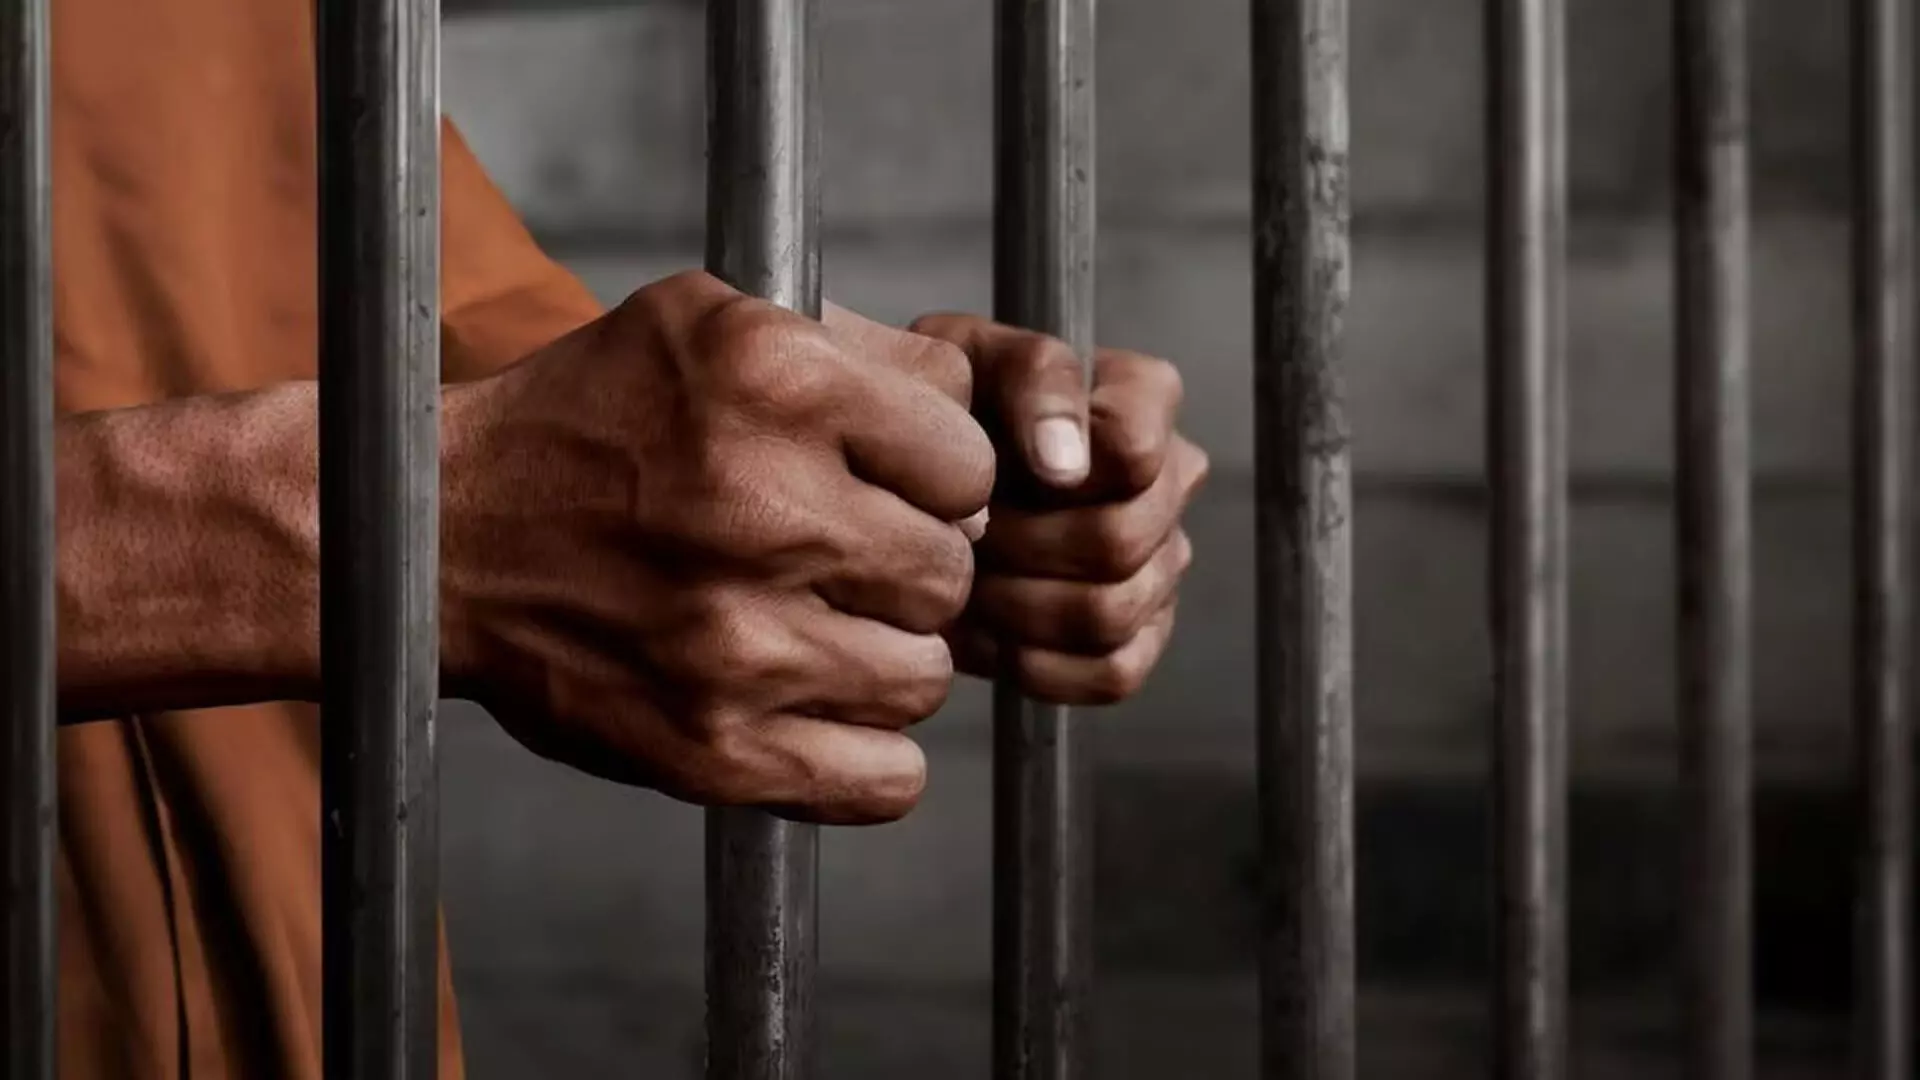 2017 में नाबालिग का यौन उत्पीड़न करने वाले आरोपी को मिली 10 साल की कैद